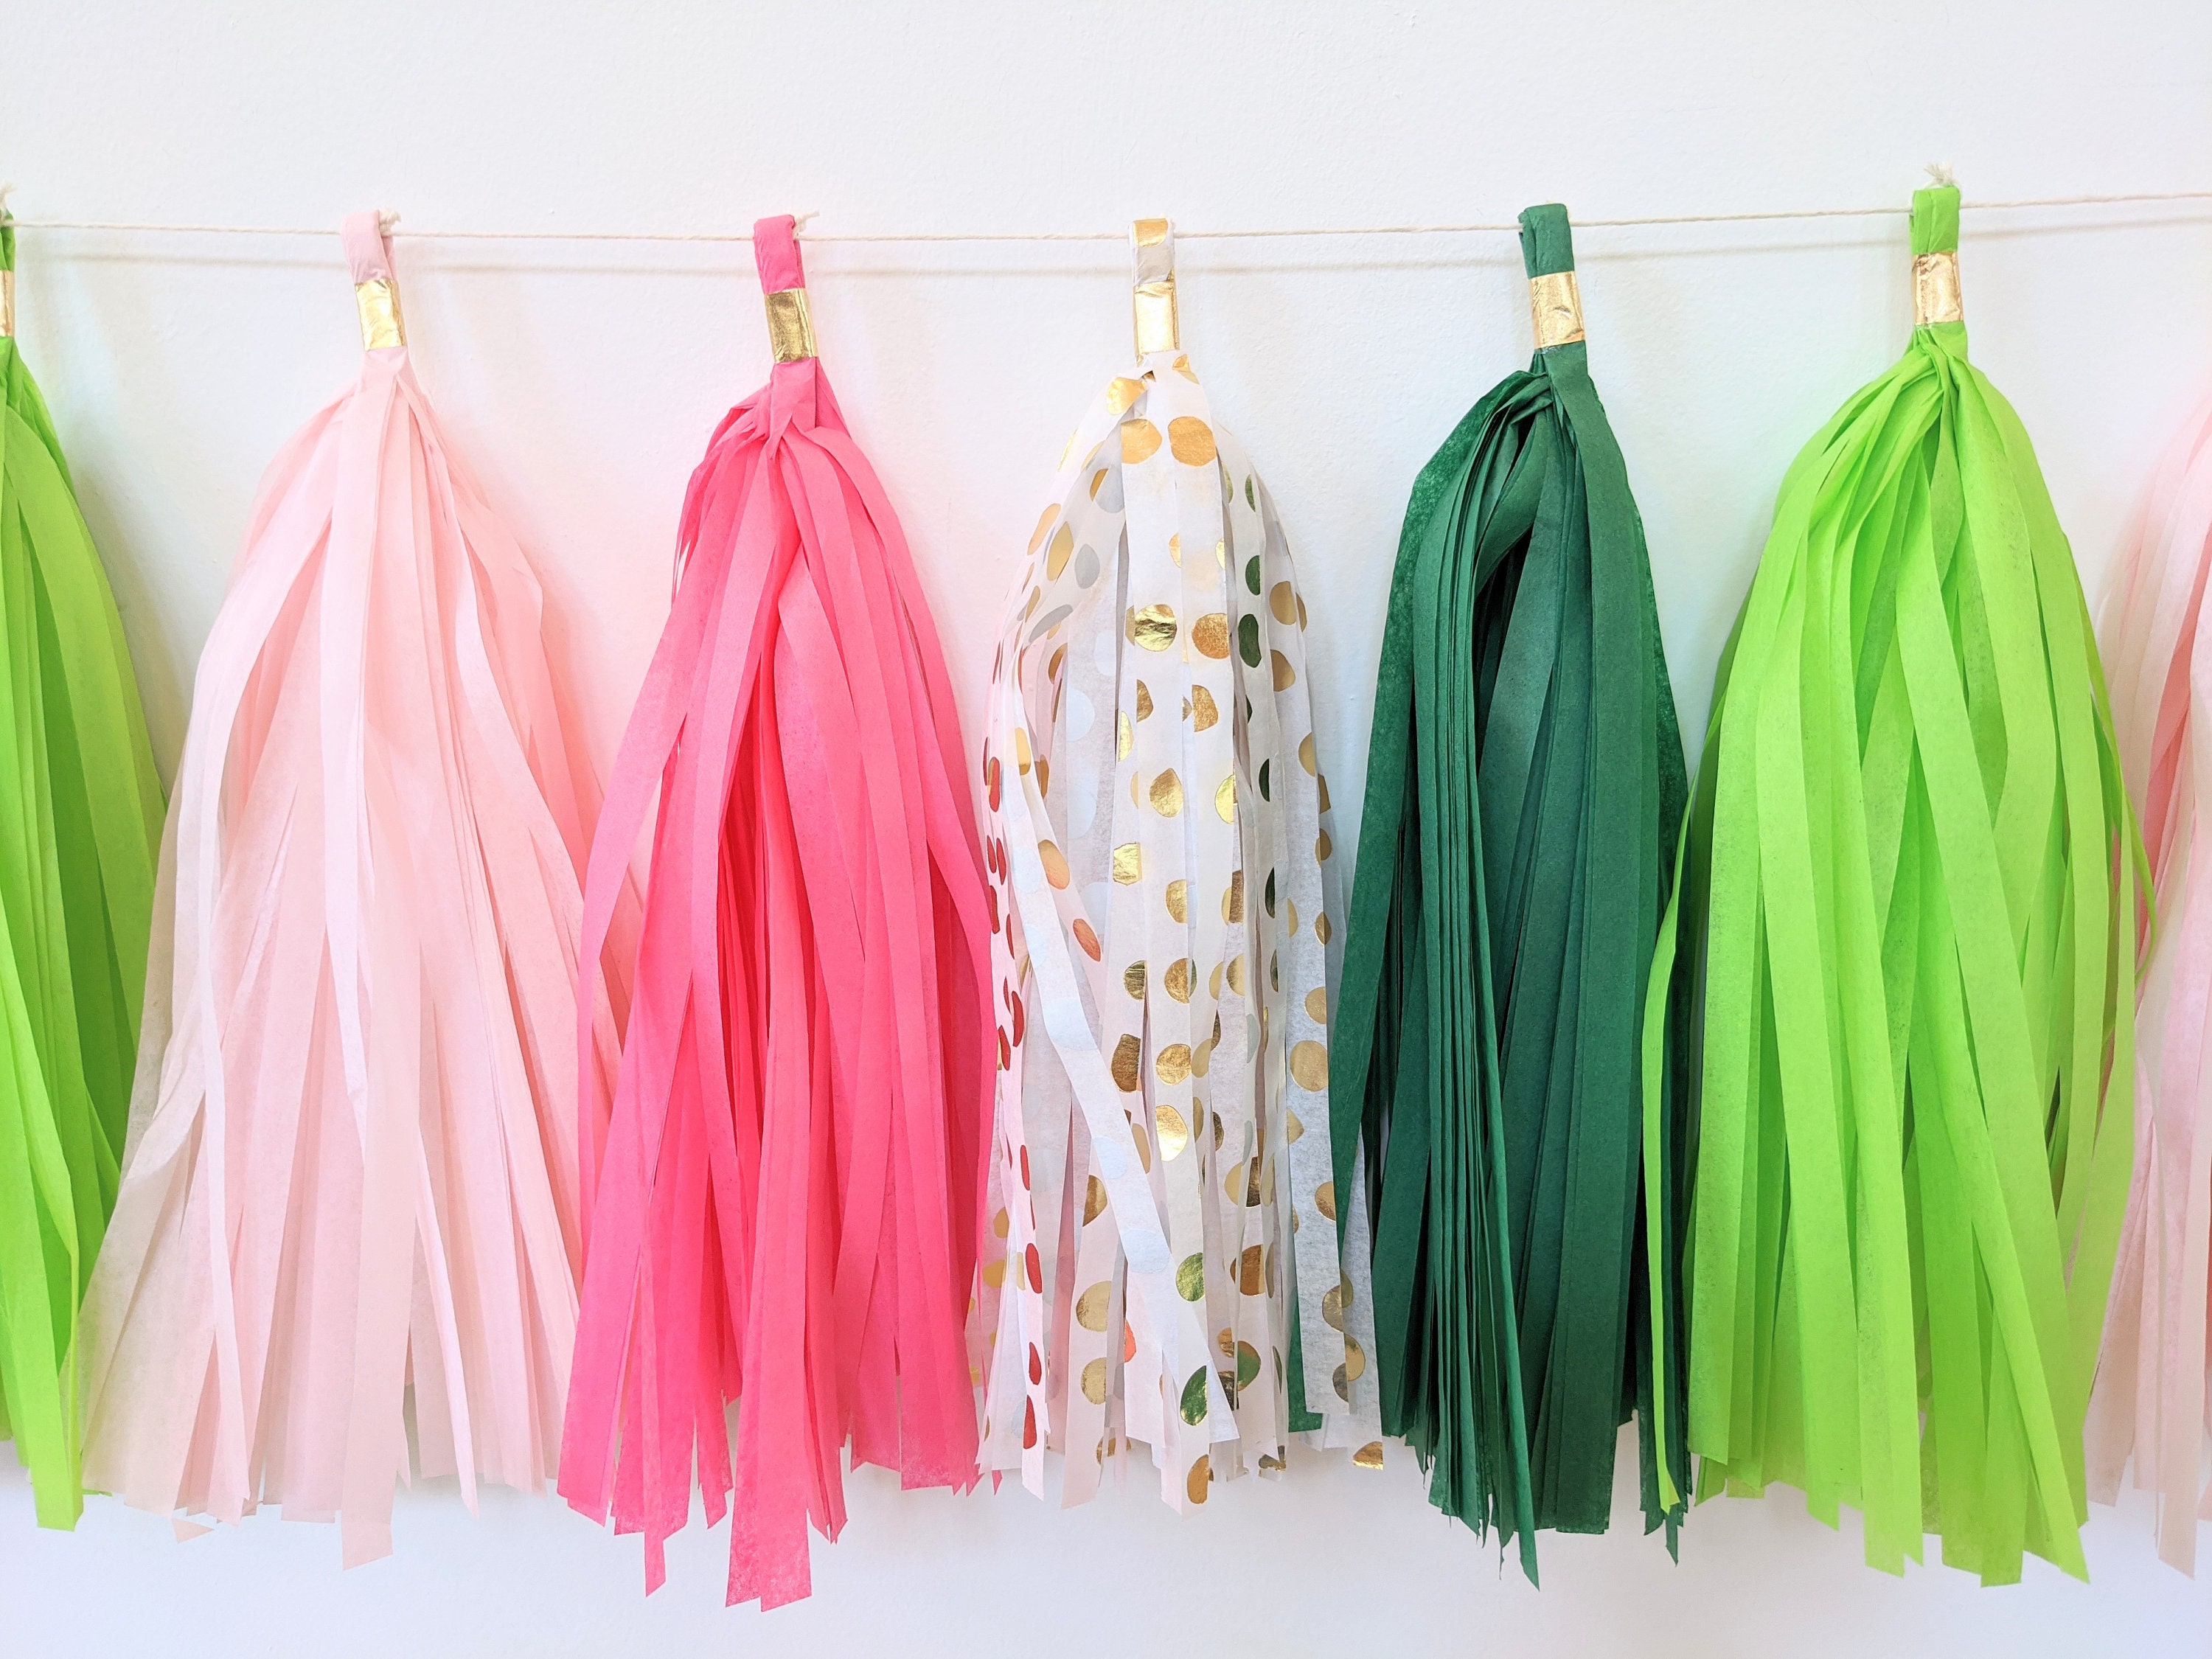 Balloon Tassel DIY Kit tassels Only Tissue Paper Tassel Tails for